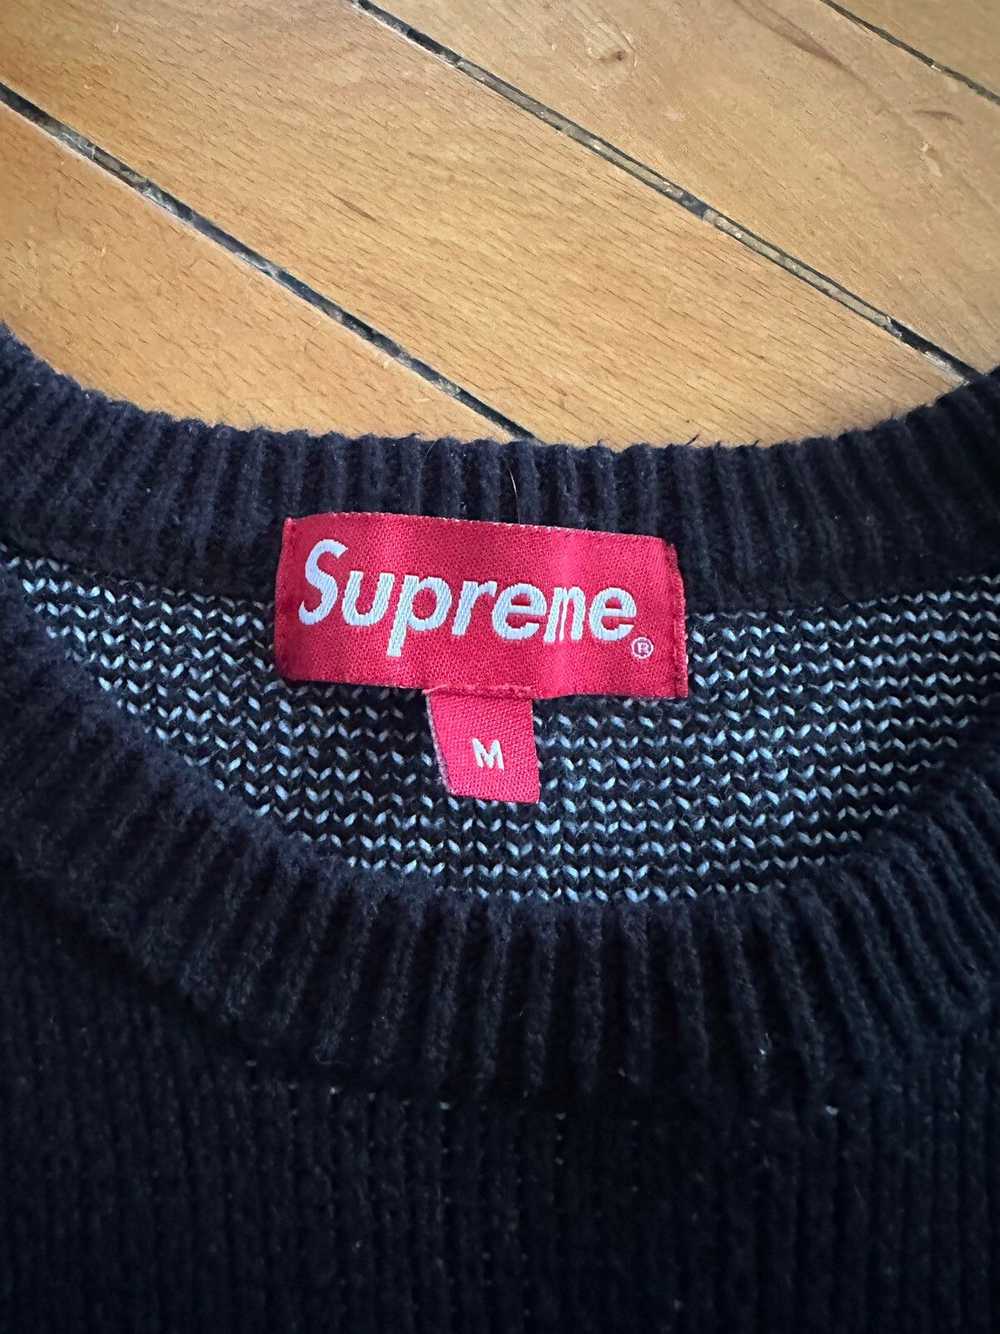 Supreme Supreme F/W17 Shit Sweater - image 4